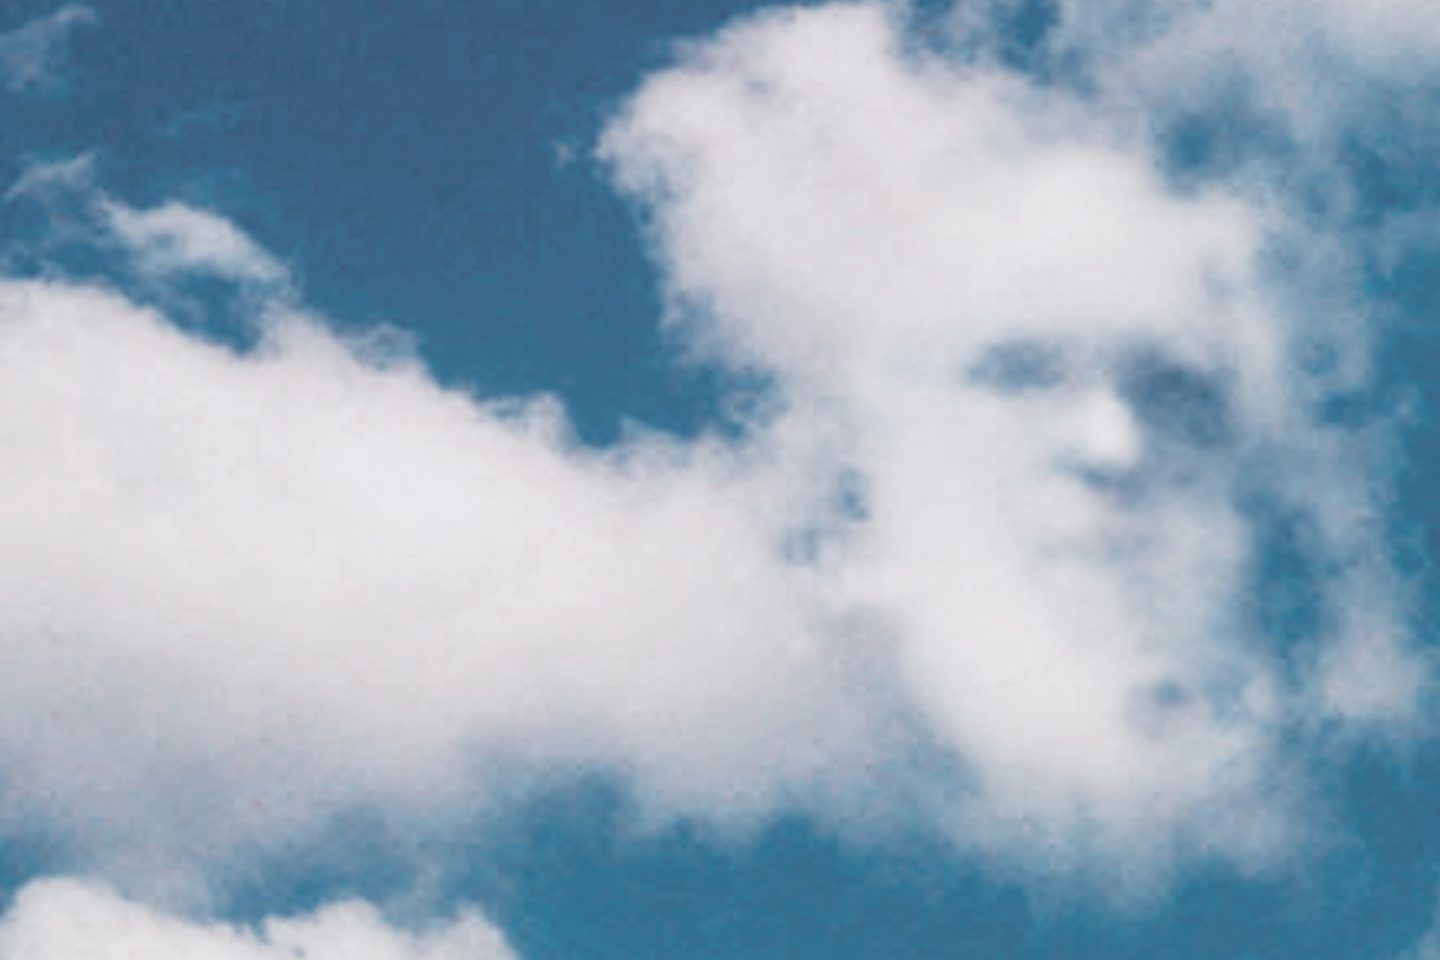 هل سبق أن رأيت صورة وجه مألوف في الغيوم؟ لست الكائن الوحيد الذي يتخيلها